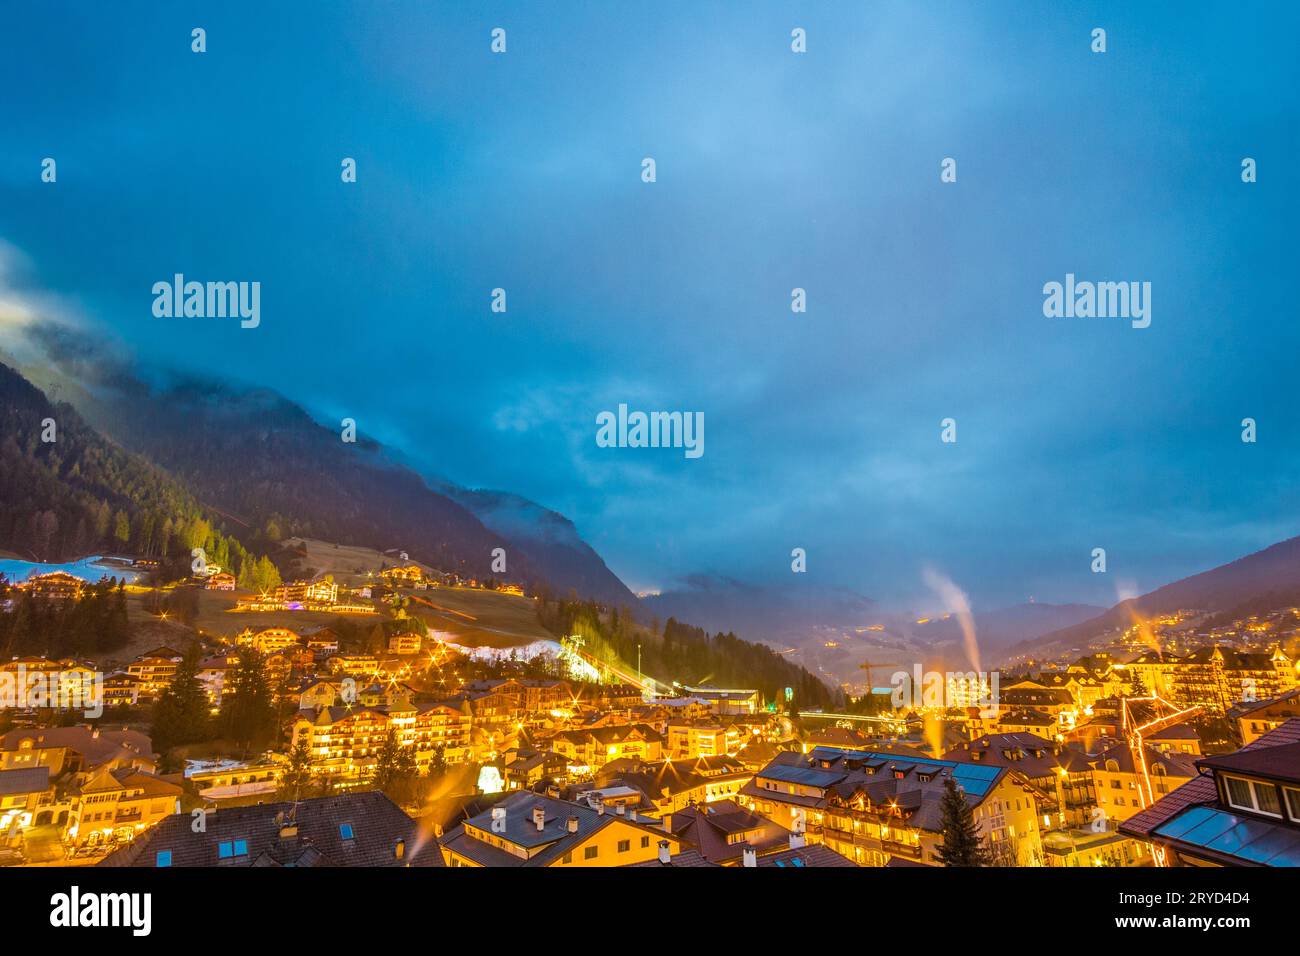 Vue nocturne du village de montagne dans la vallée alpine Banque D'Images